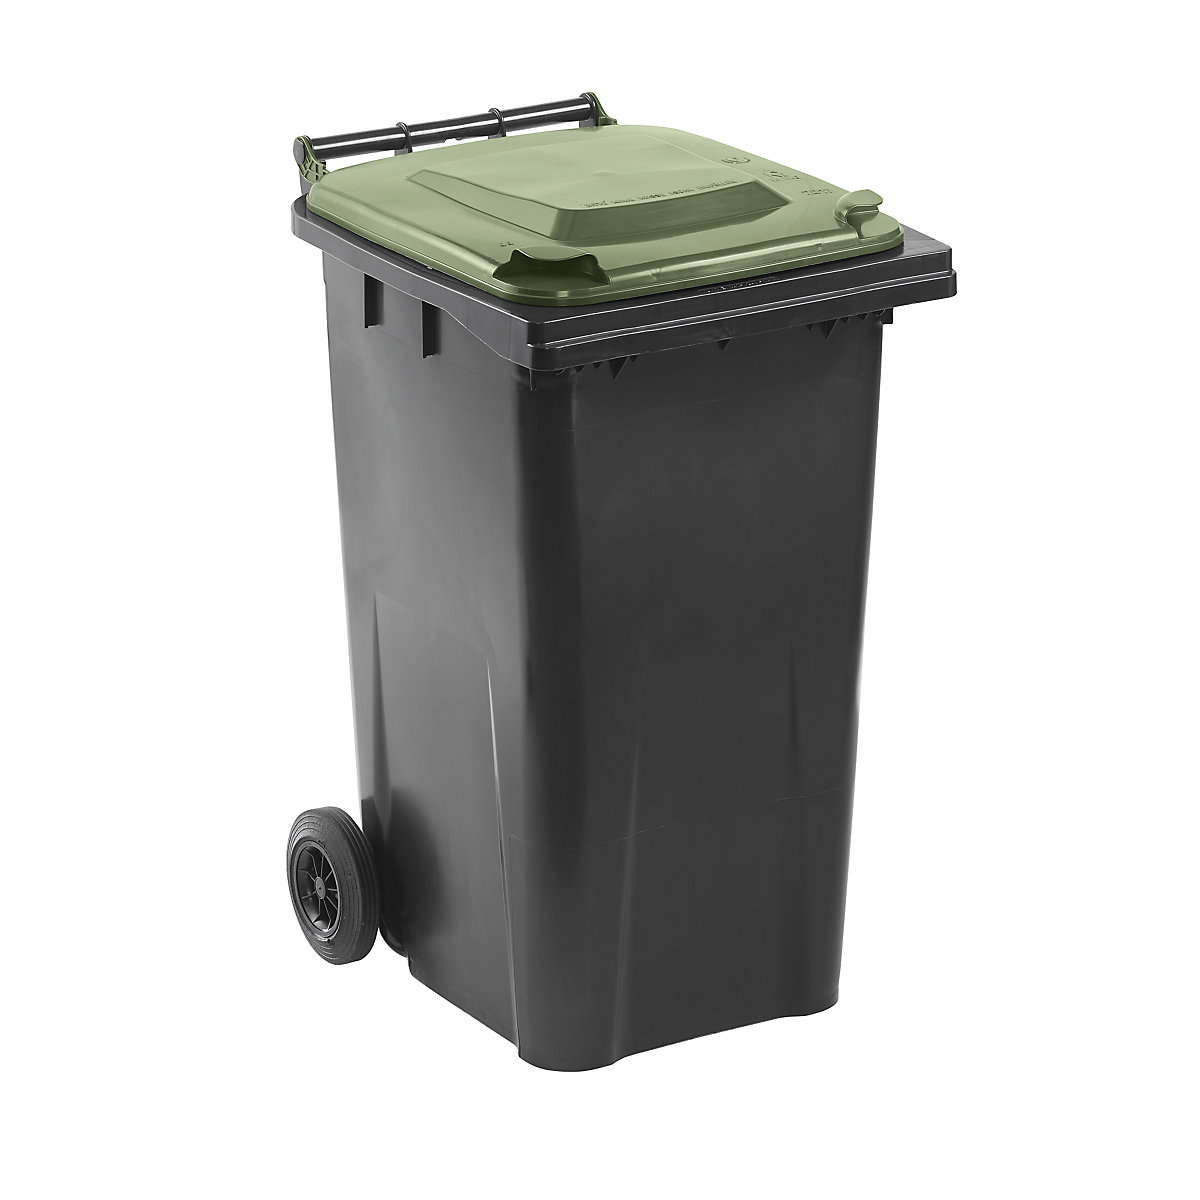 Nádoba na odpad podle ČSN EN 840, objem 240 l, š x v x h 580 x 1100 x 740 mm, antracitová, víko zelené